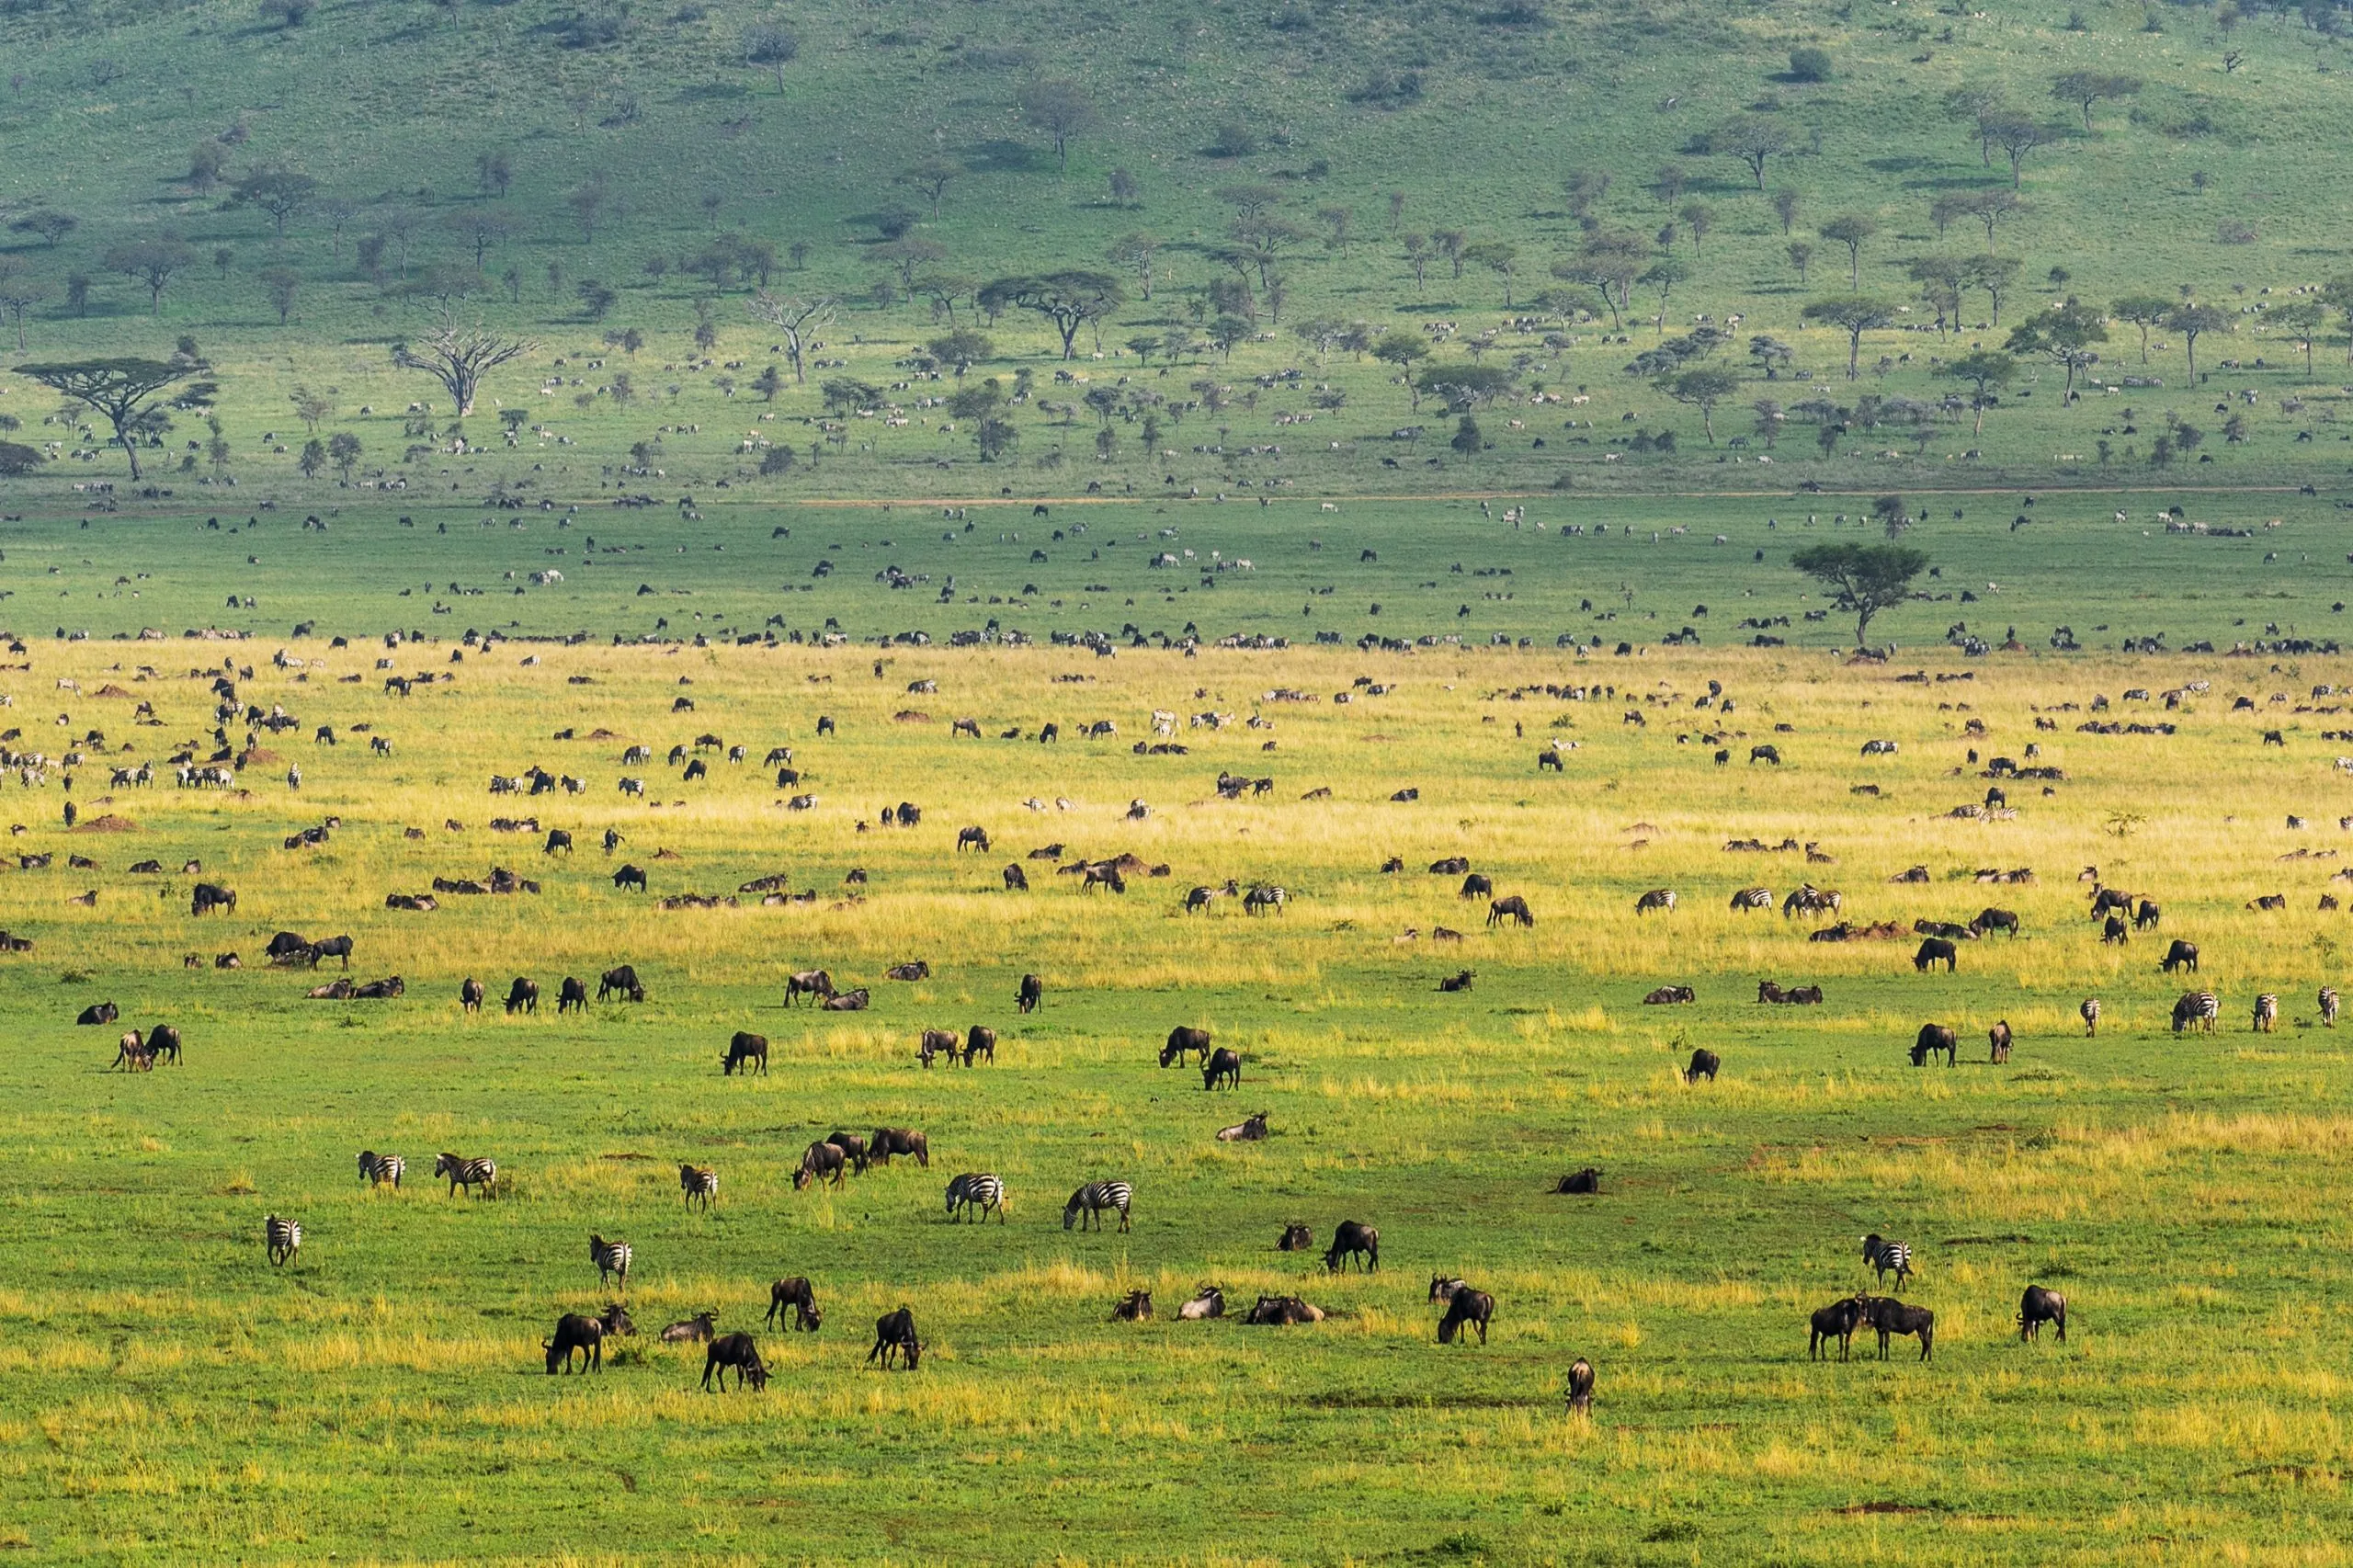 Serengeti-nationalparkens landskab fuld af dyr